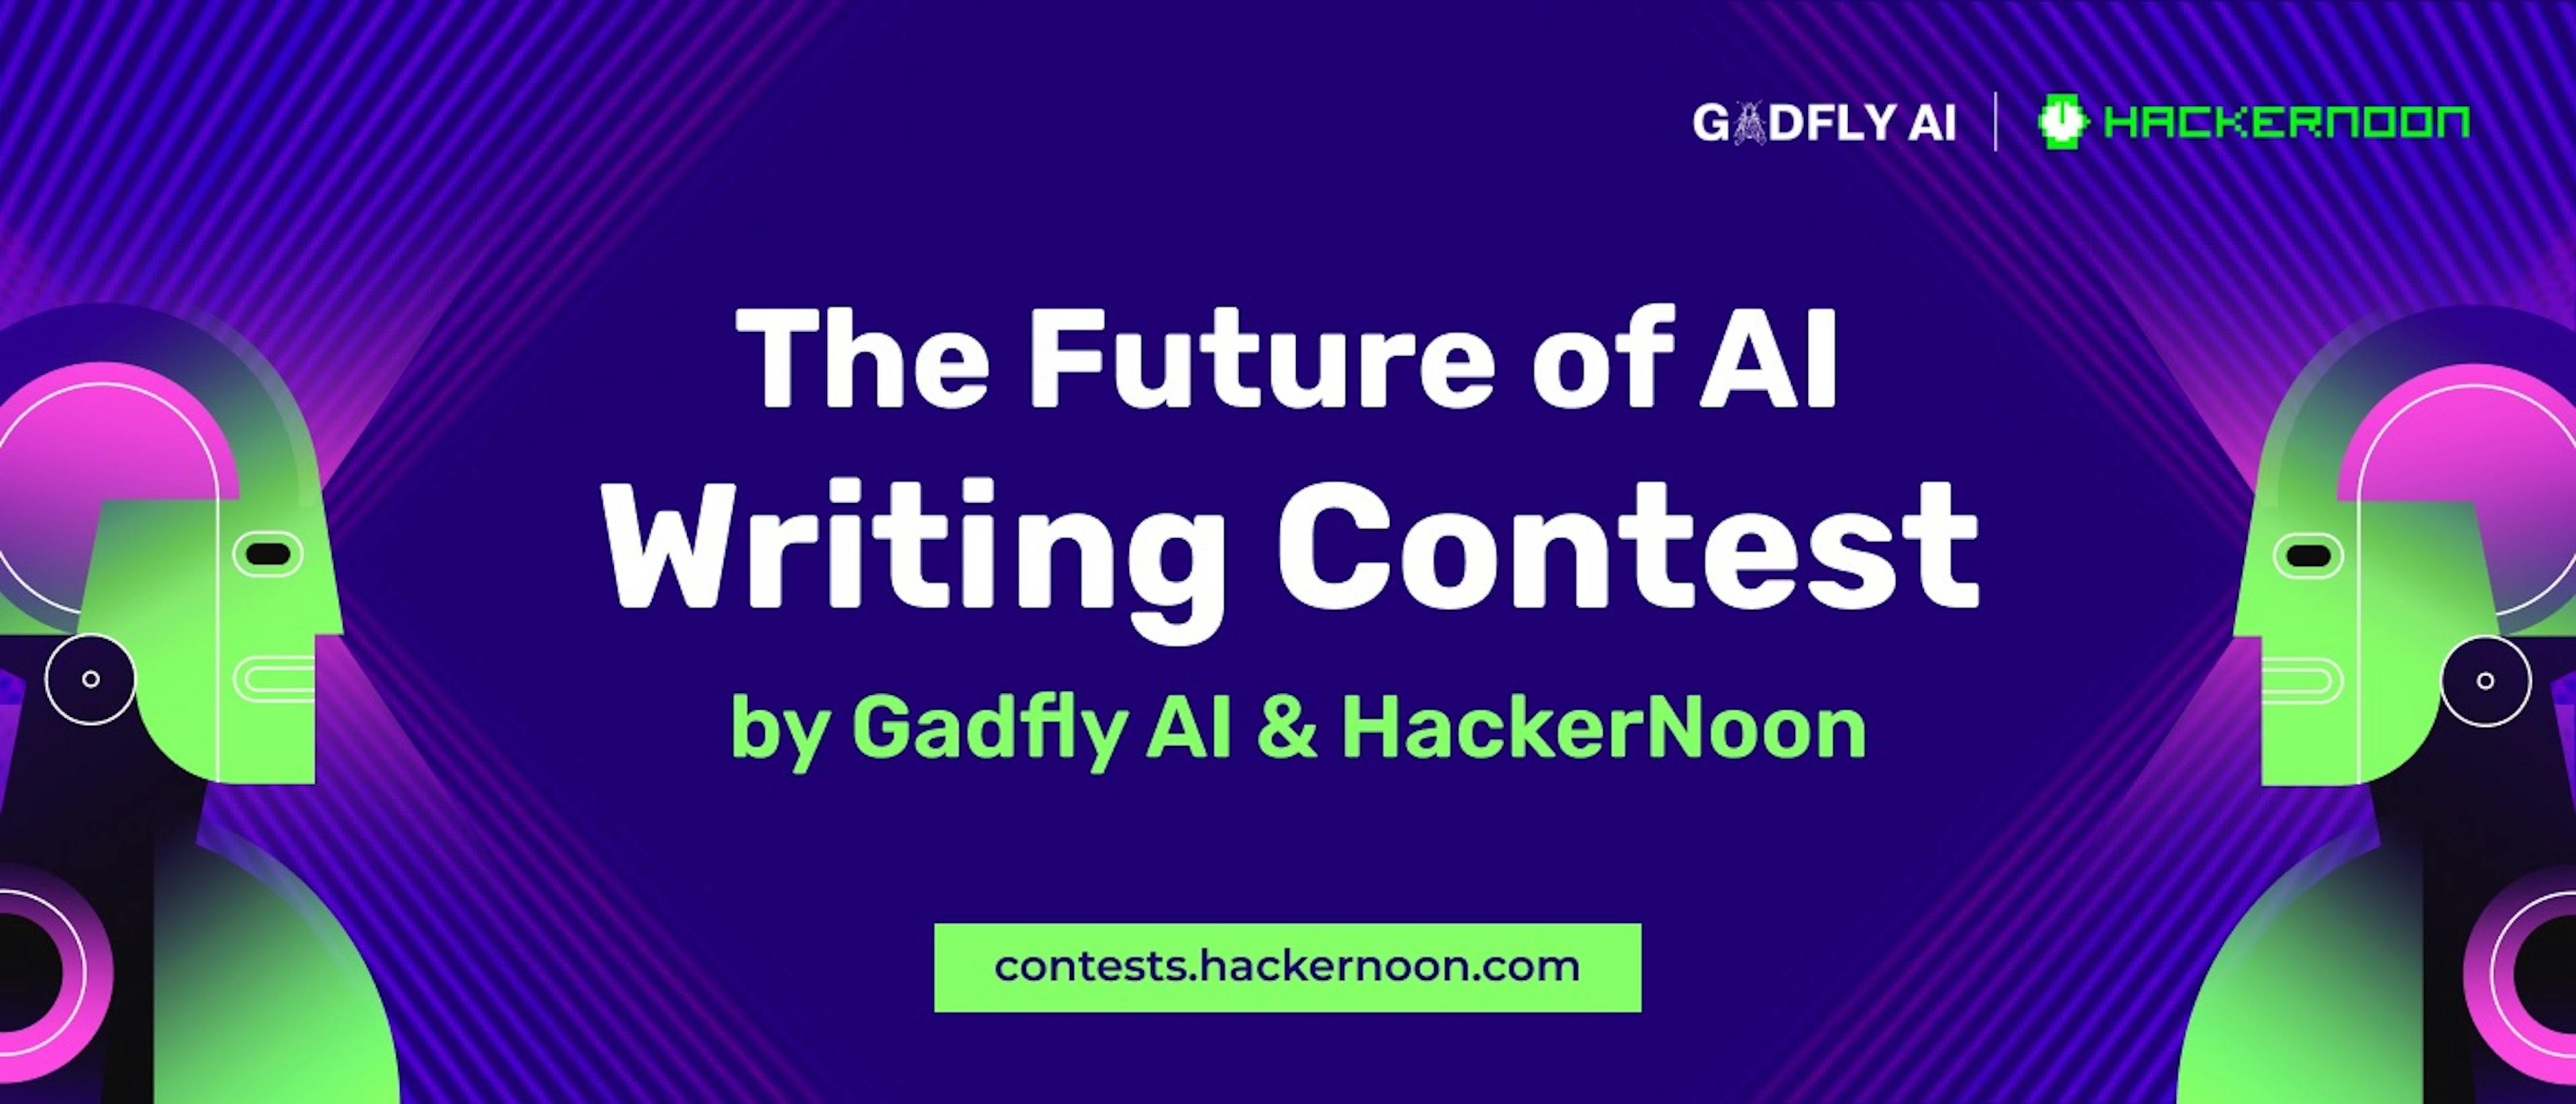 featured image - Concurso de redação sobre o futuro da IA por Gadfly AI